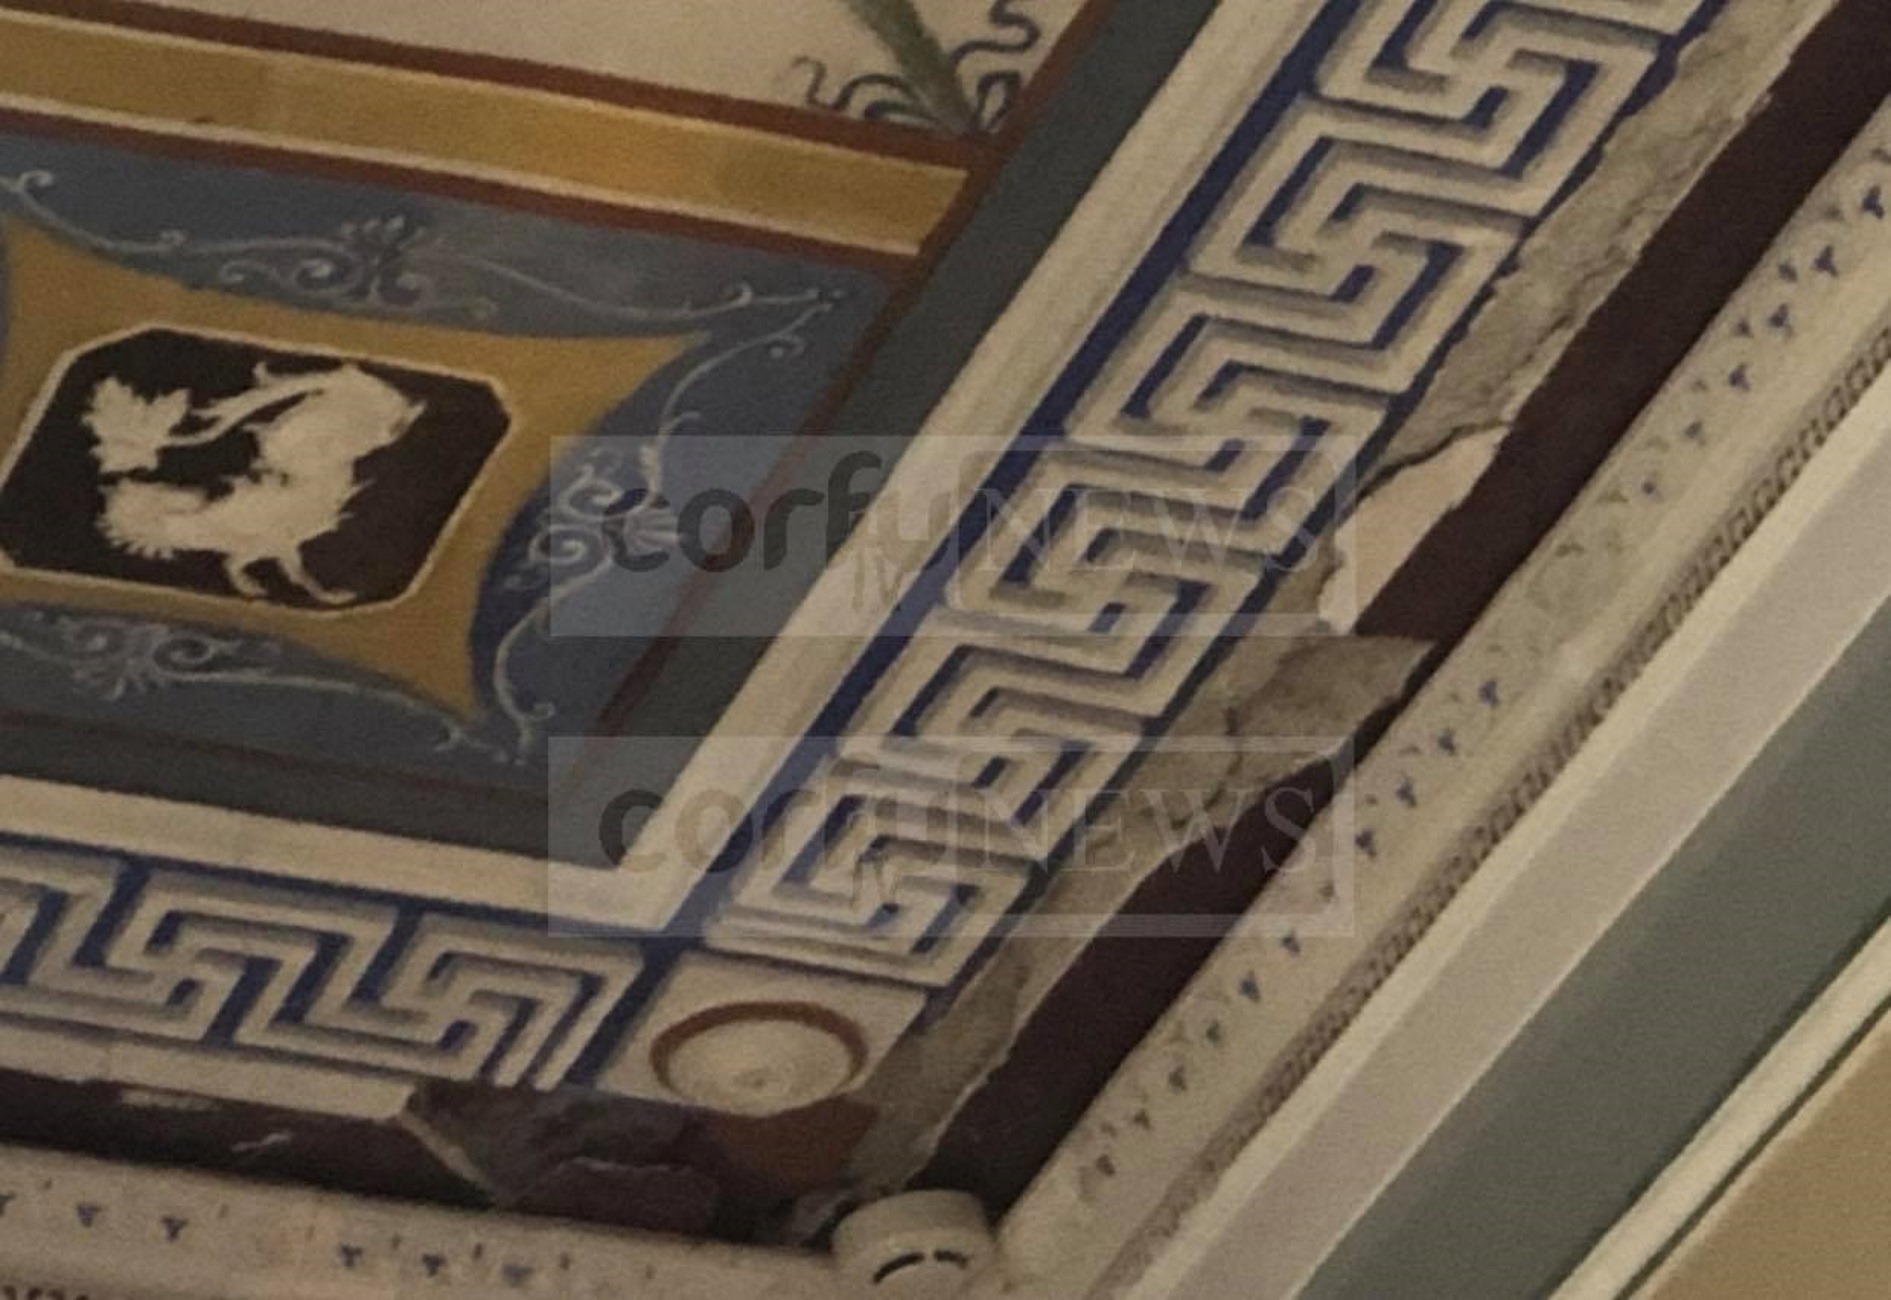 Κέρκυρα – Αχίλλειο: Εικόνες ντροπής στο παραμυθένιο παλάτι της πριγκίπισσας Σίσσυ [pics]